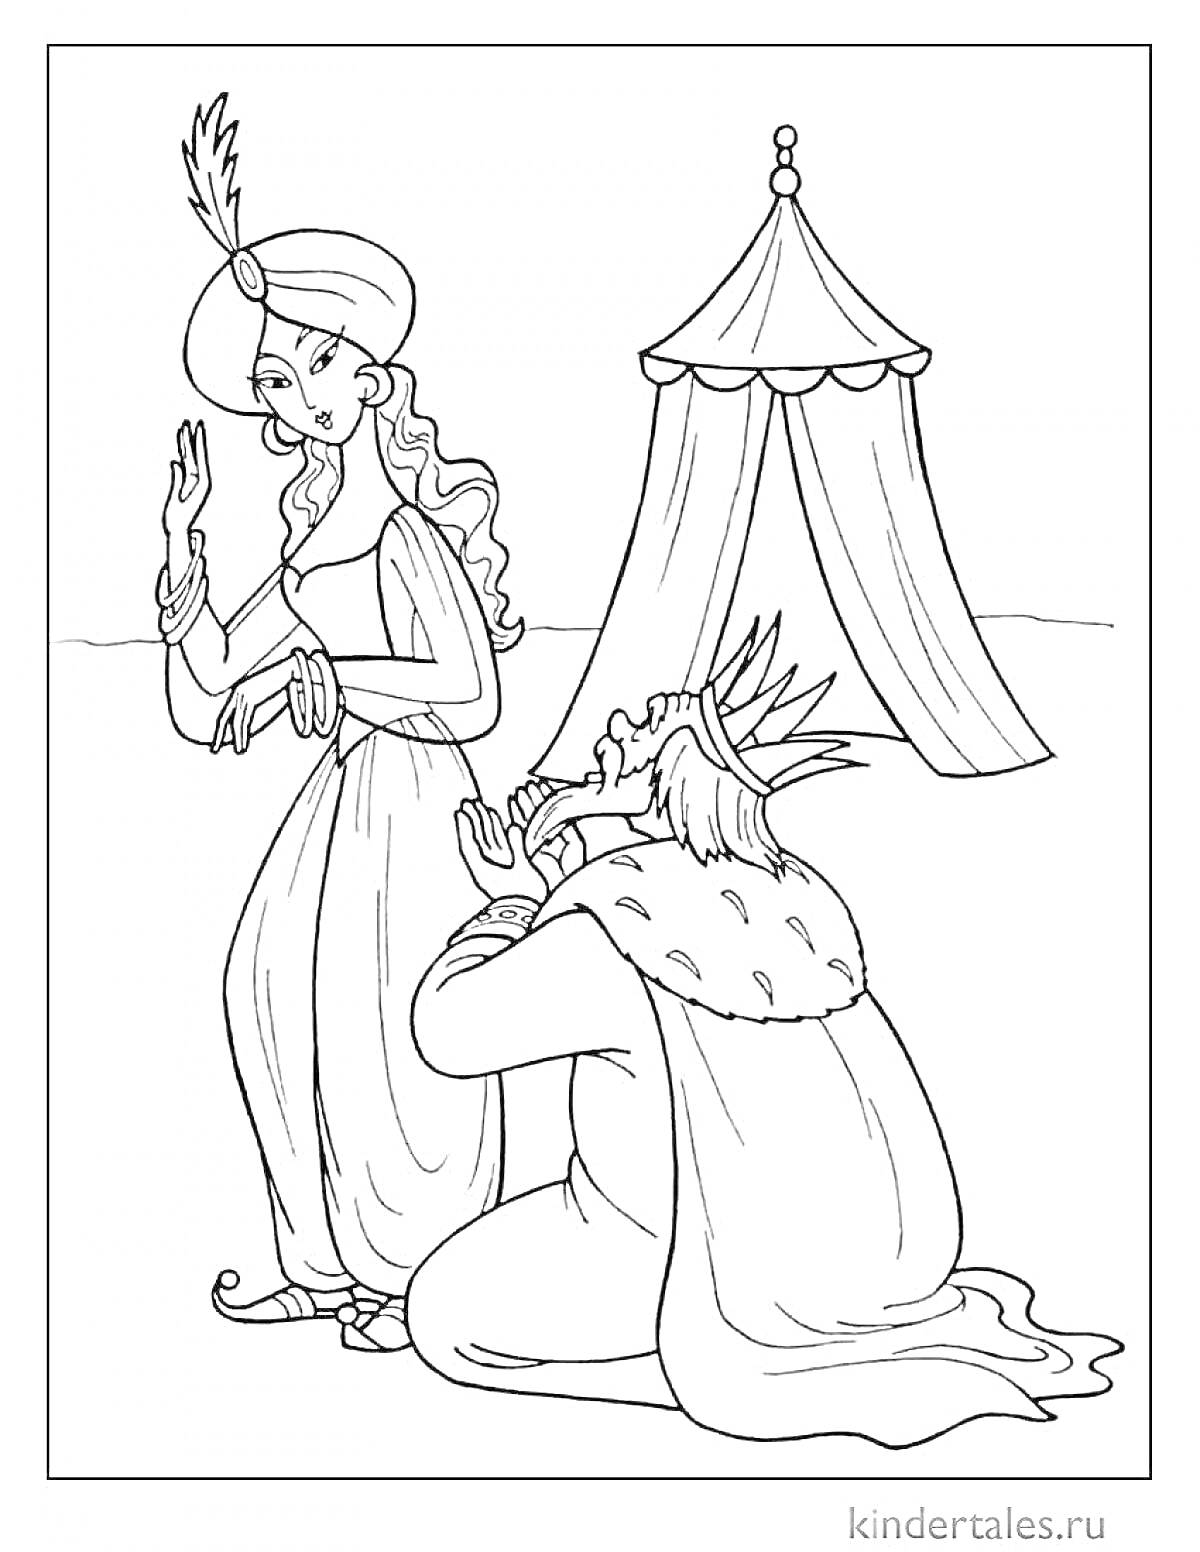 Раскраска Король на коленях, просящий женщину в восточном костюме перед шатром